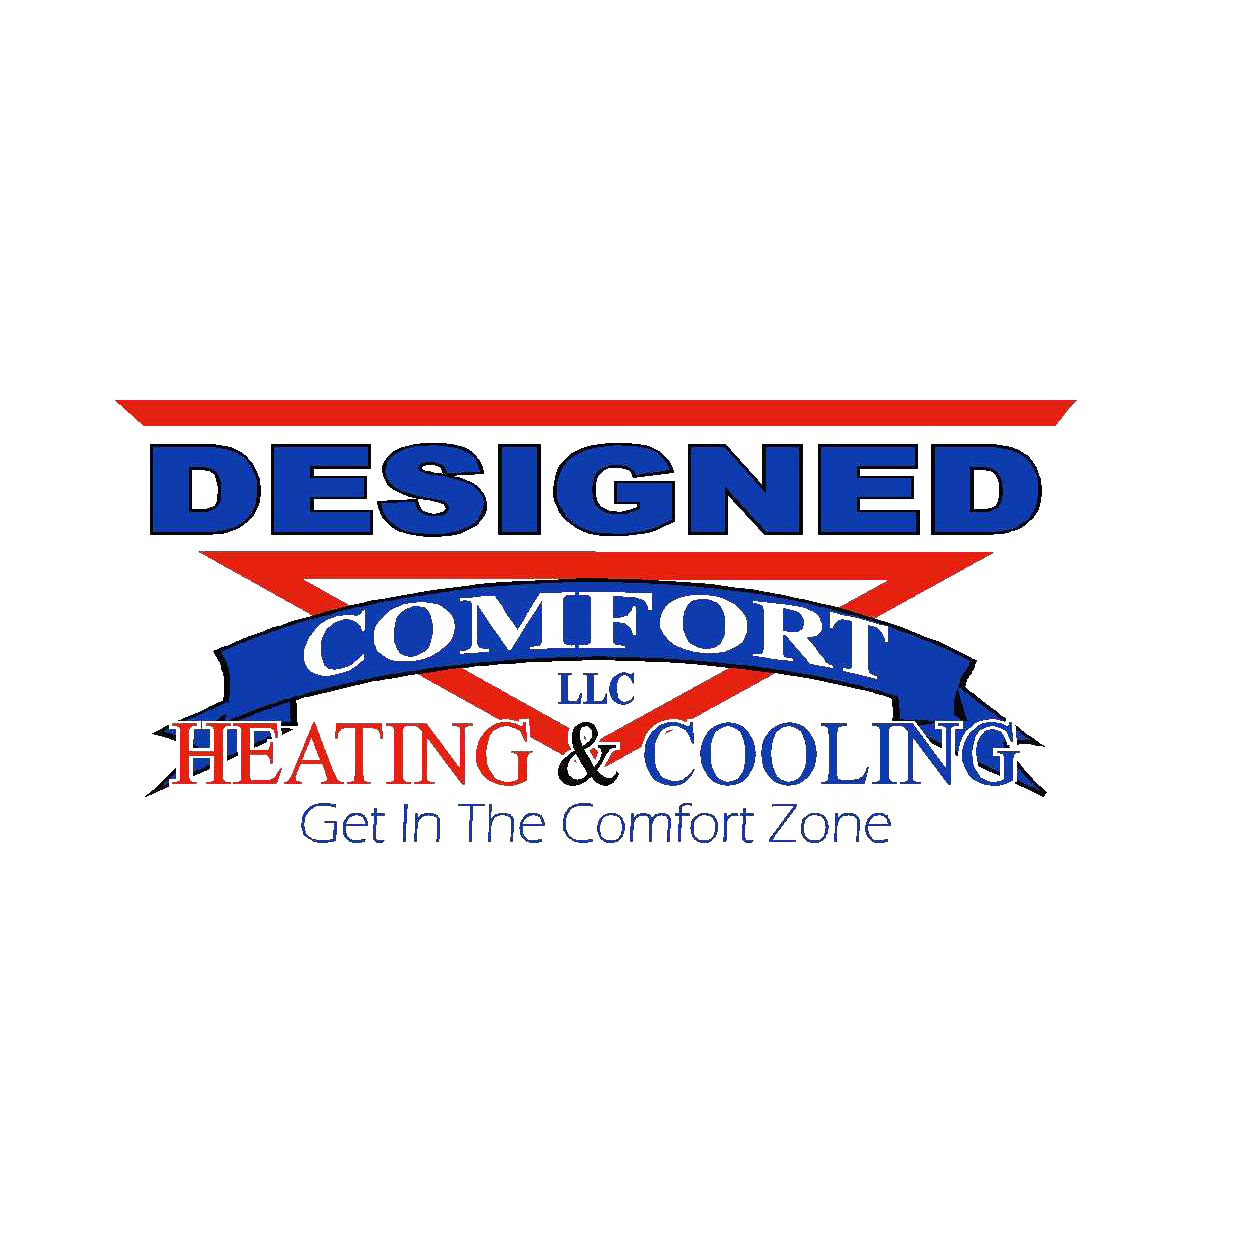 Designed Comfort, LLC